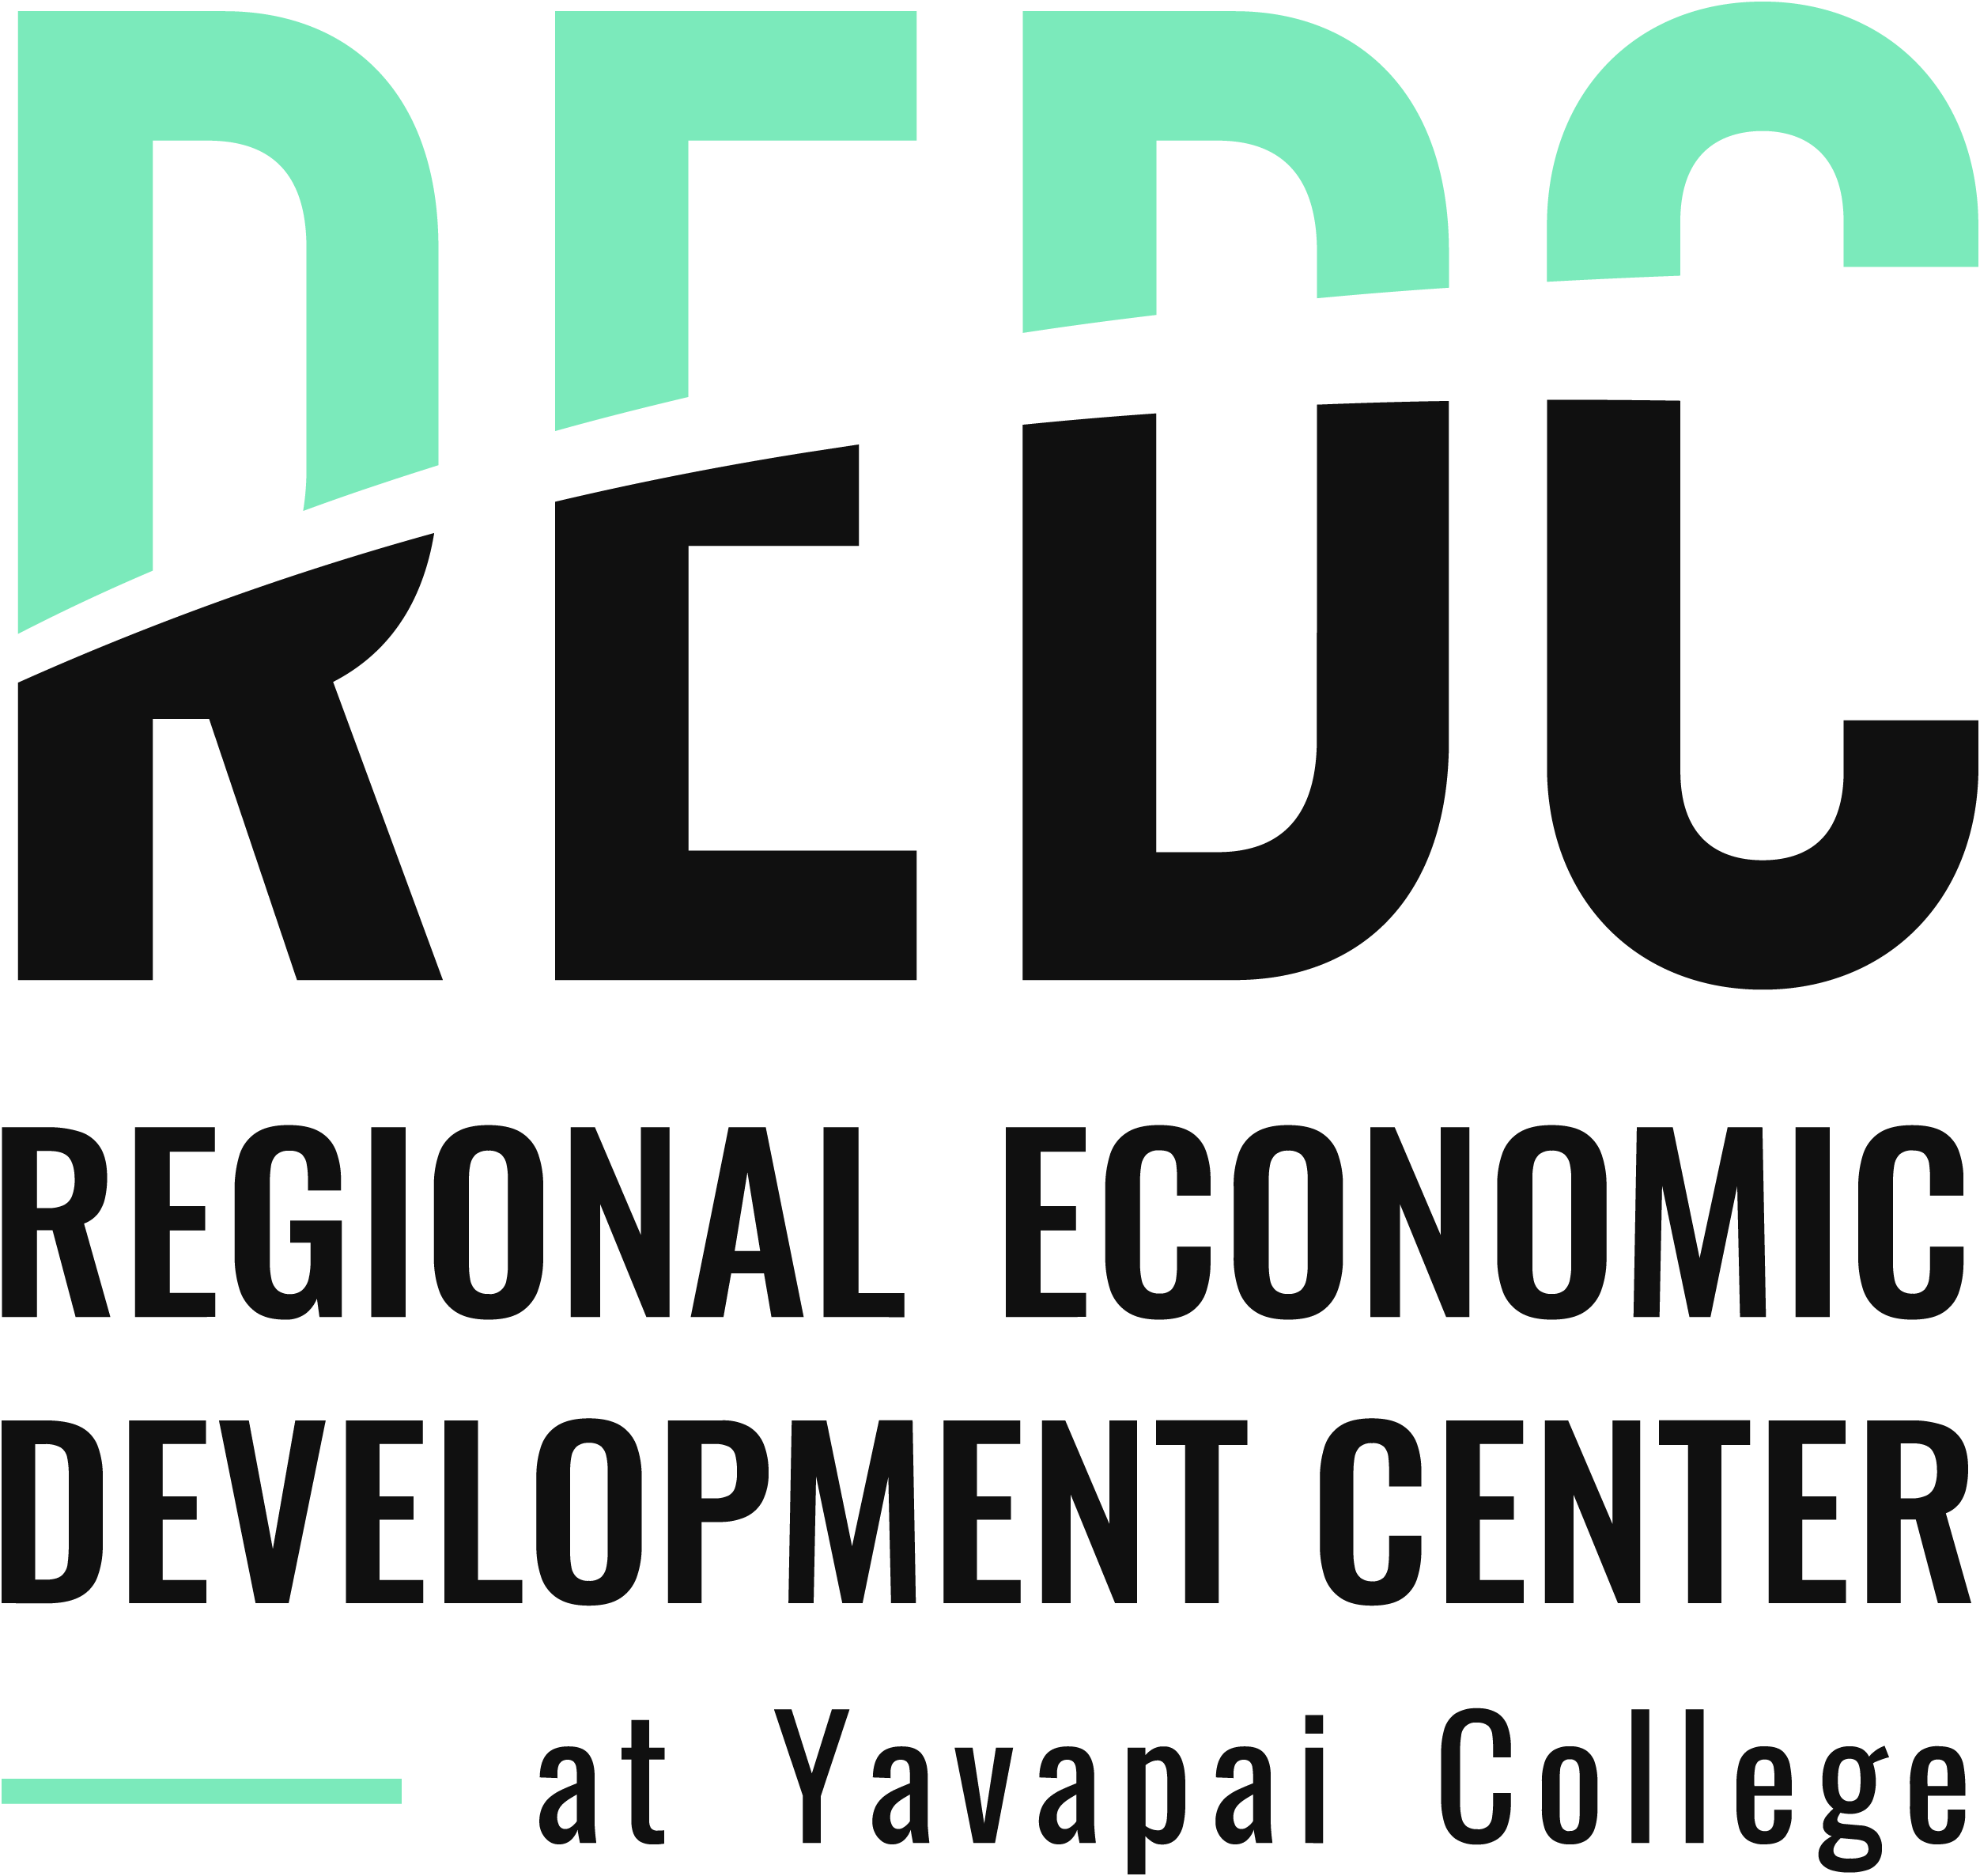 redc-logo.png